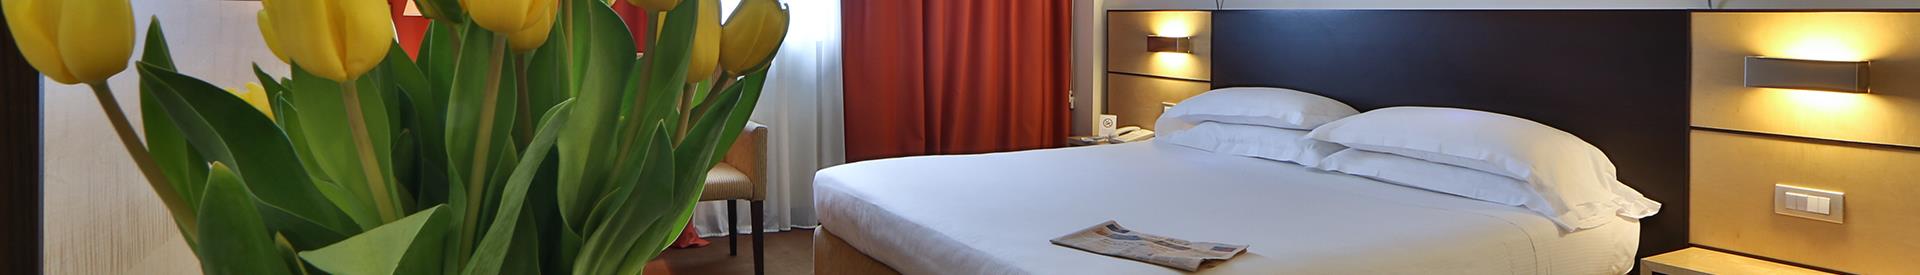  4 star  hotel room in Cornaredo (MI)